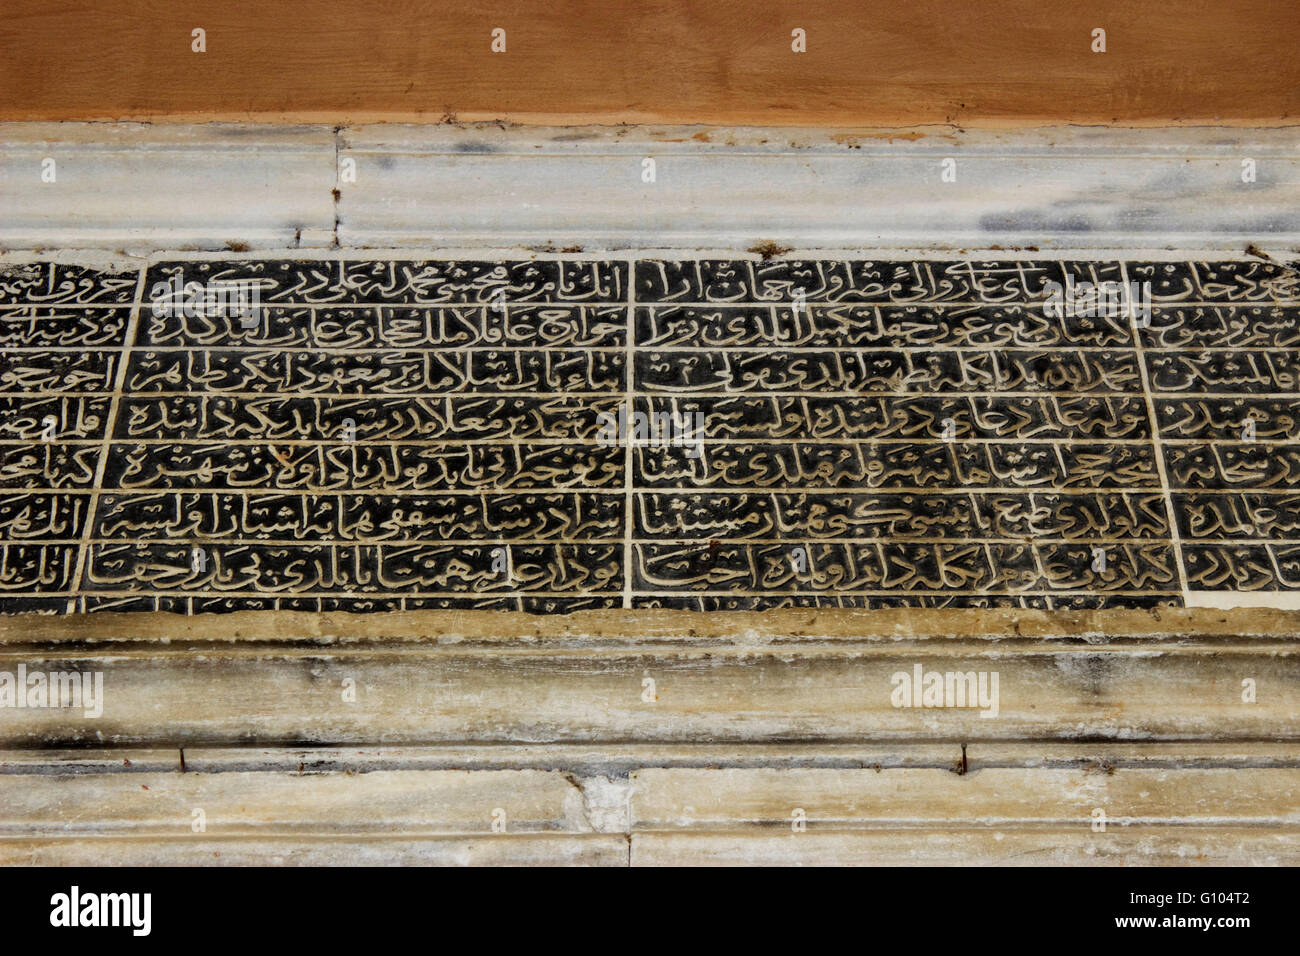 Vue rapprochée de l'IMARET script arabe inscription placée au-dessus d'une porte d'entrée du complexe. Kavala, Grèce Banque D'Images